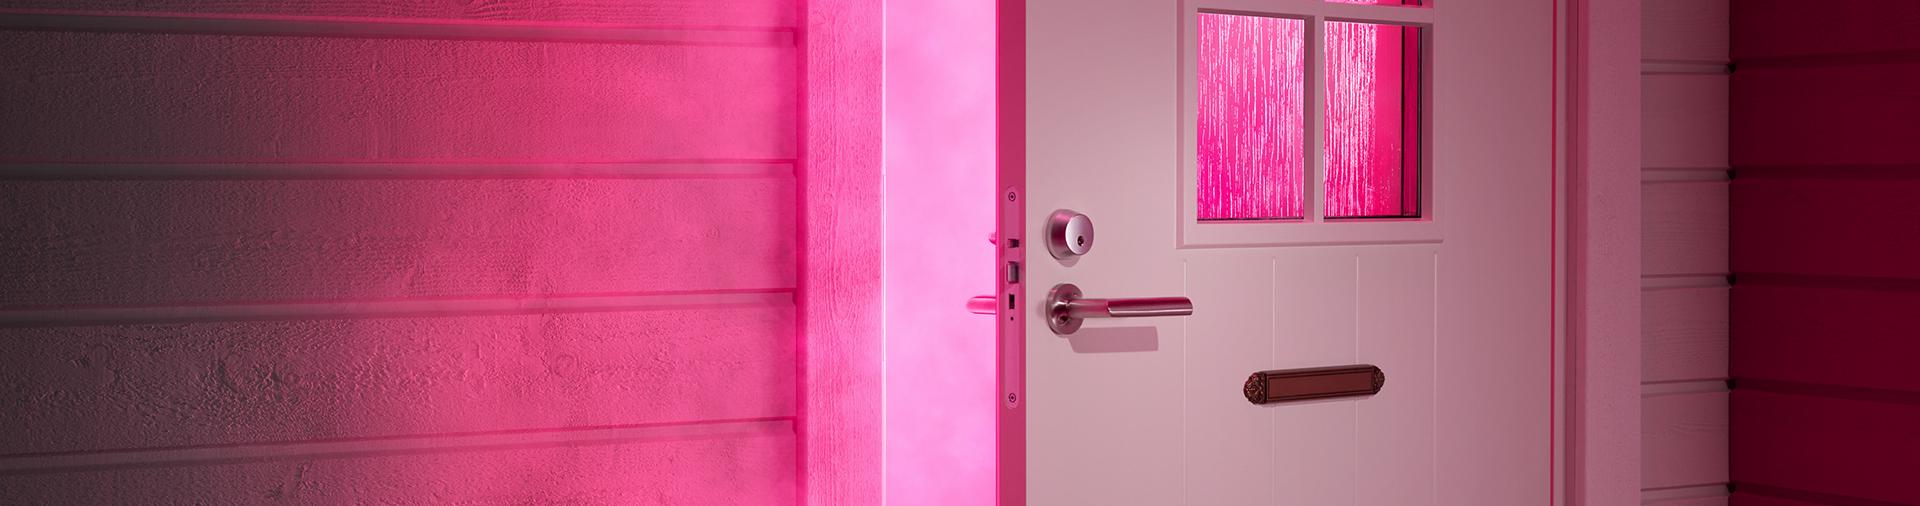 pinkki kuva jossa ovi on auki ja ovesta tulee pinkkiä savua